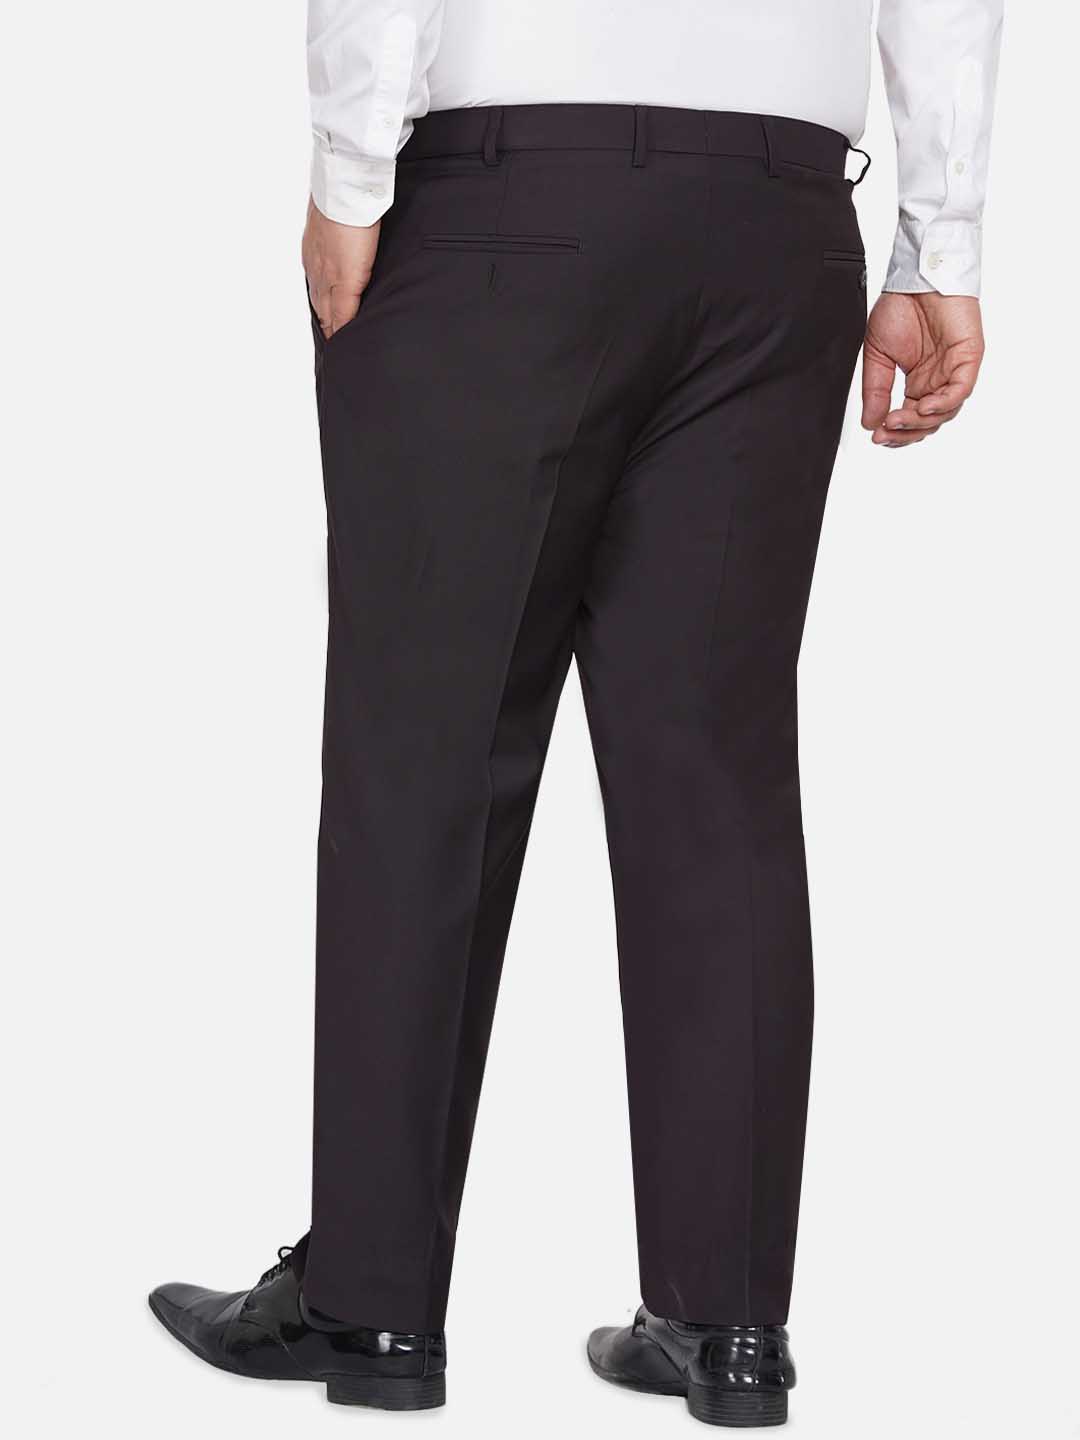 bottomwear/trousers/JPTR22010E/jptr22010e-5.jpg